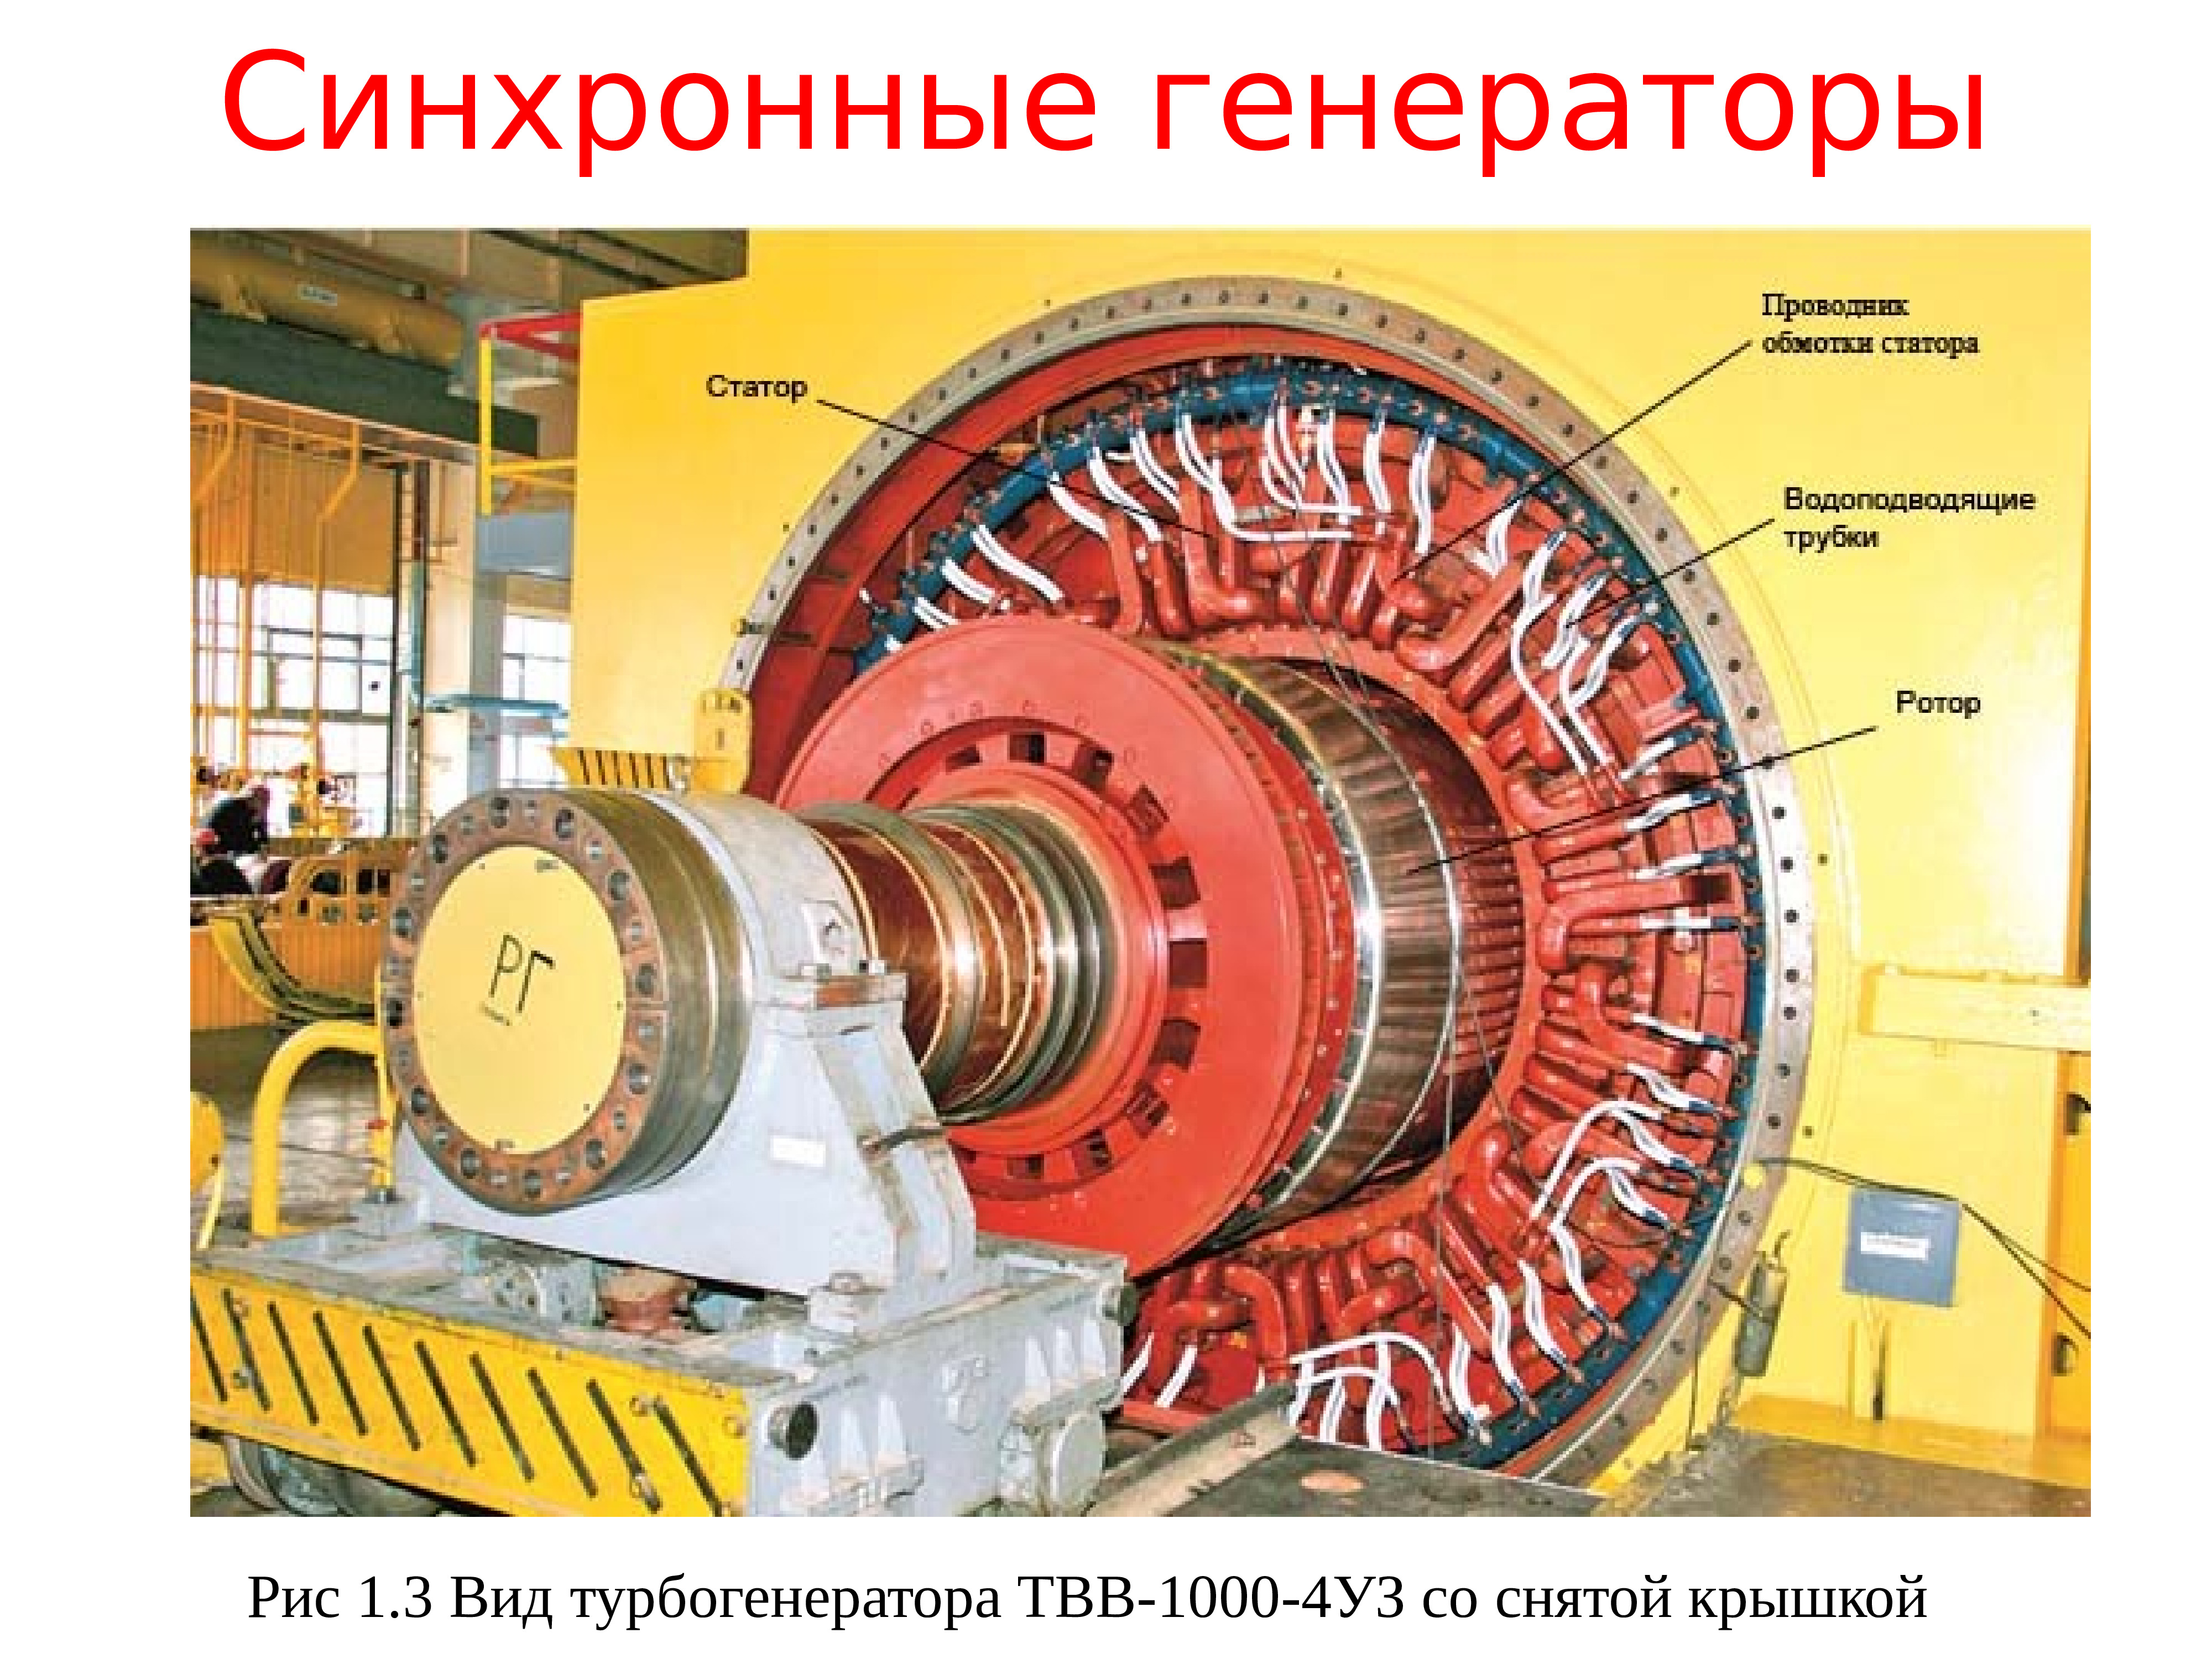 Синхронный двигатель генератор. Синхронный Генератор типа МСС-128-4 ротор. Синхронный Генератор турбогенератор 500 МВТ. Конструкция ротора синхронного генератора. Генератор синхронный 1000 МВТ.